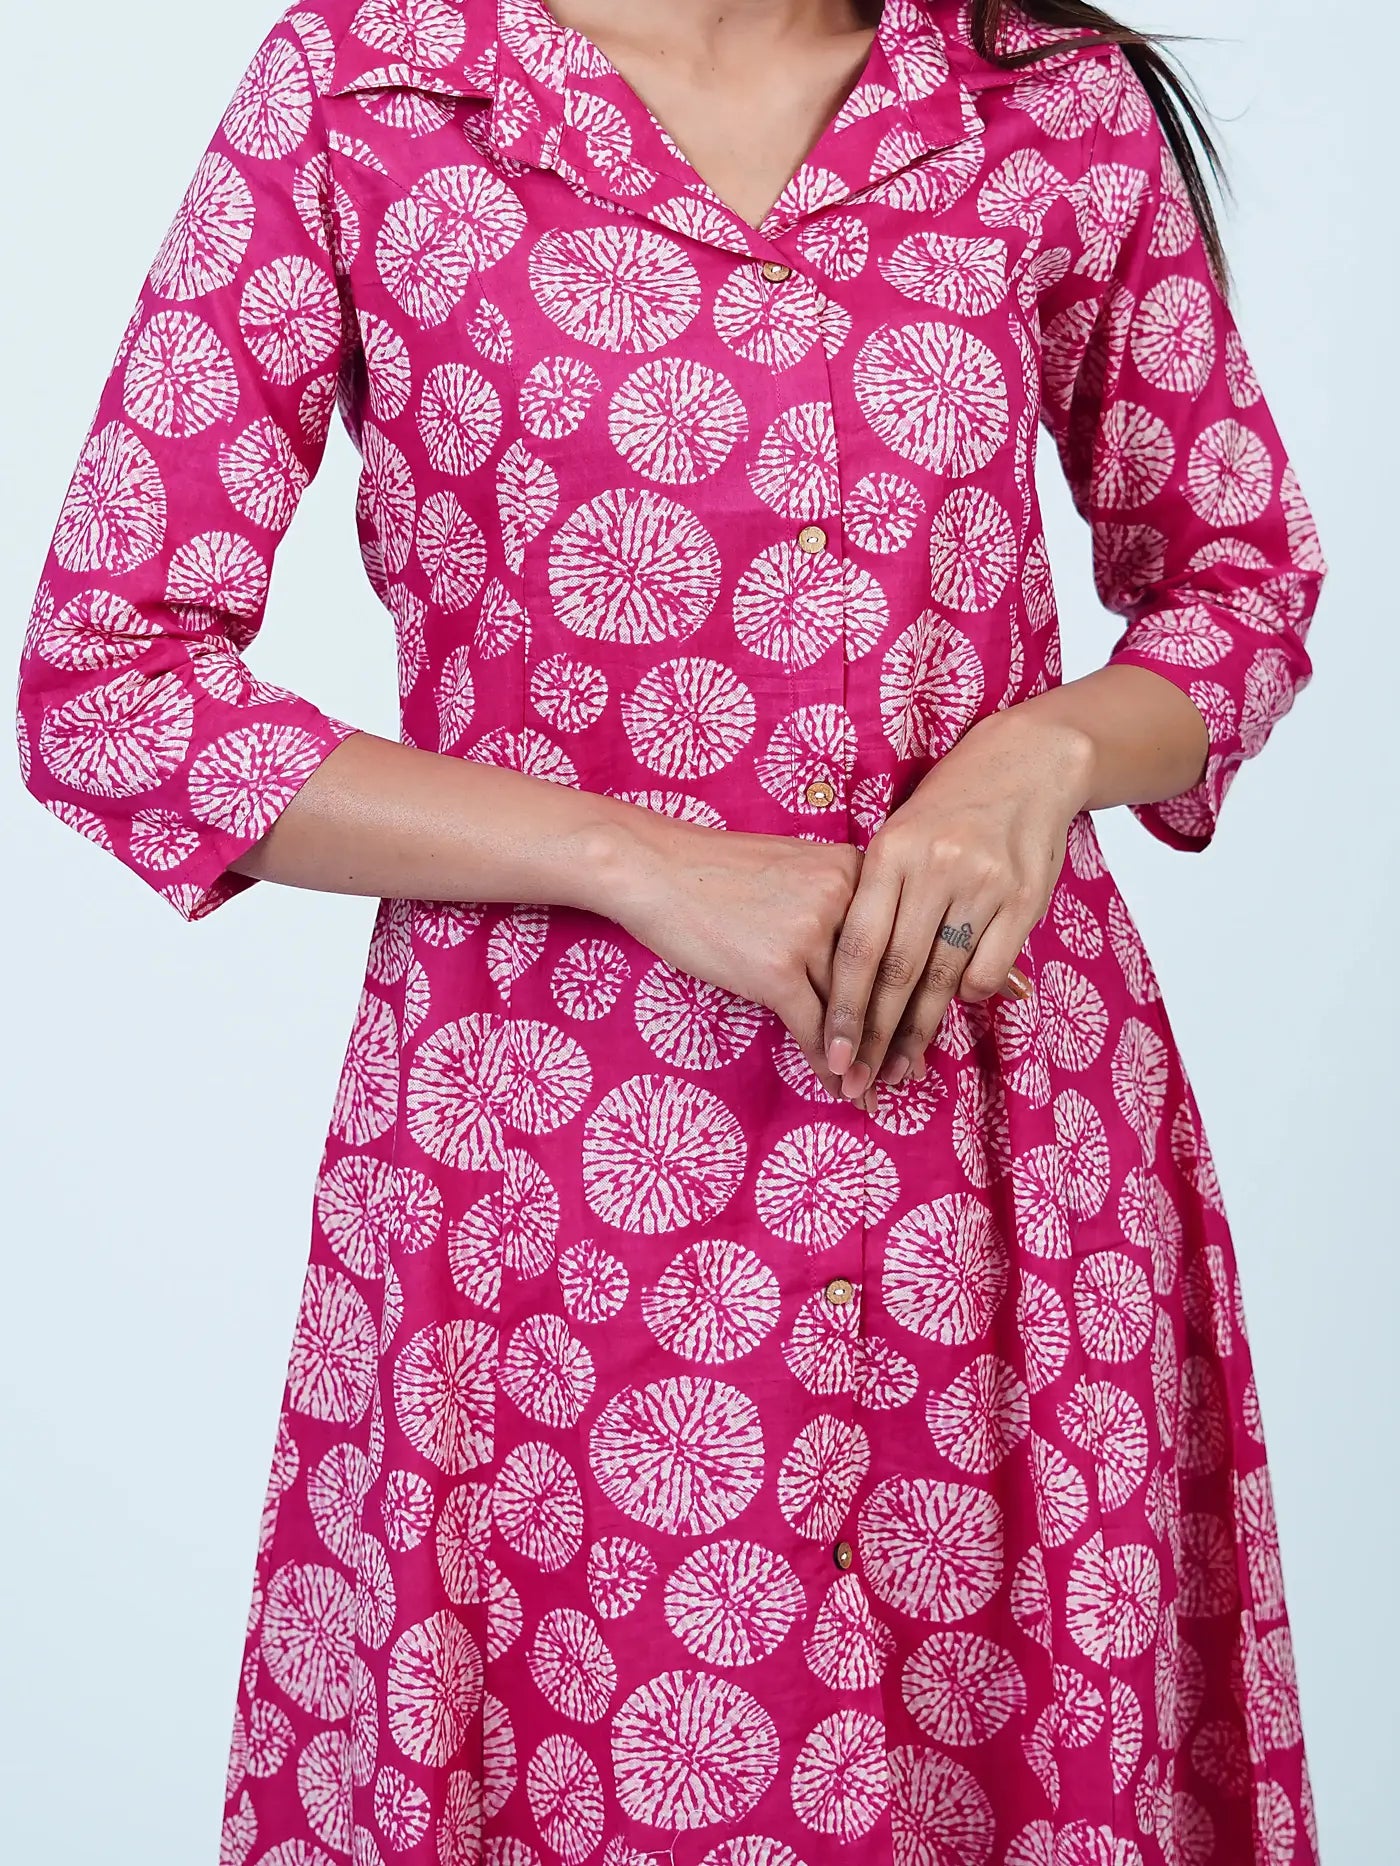 Pink Batik Print Cotton Coord Set